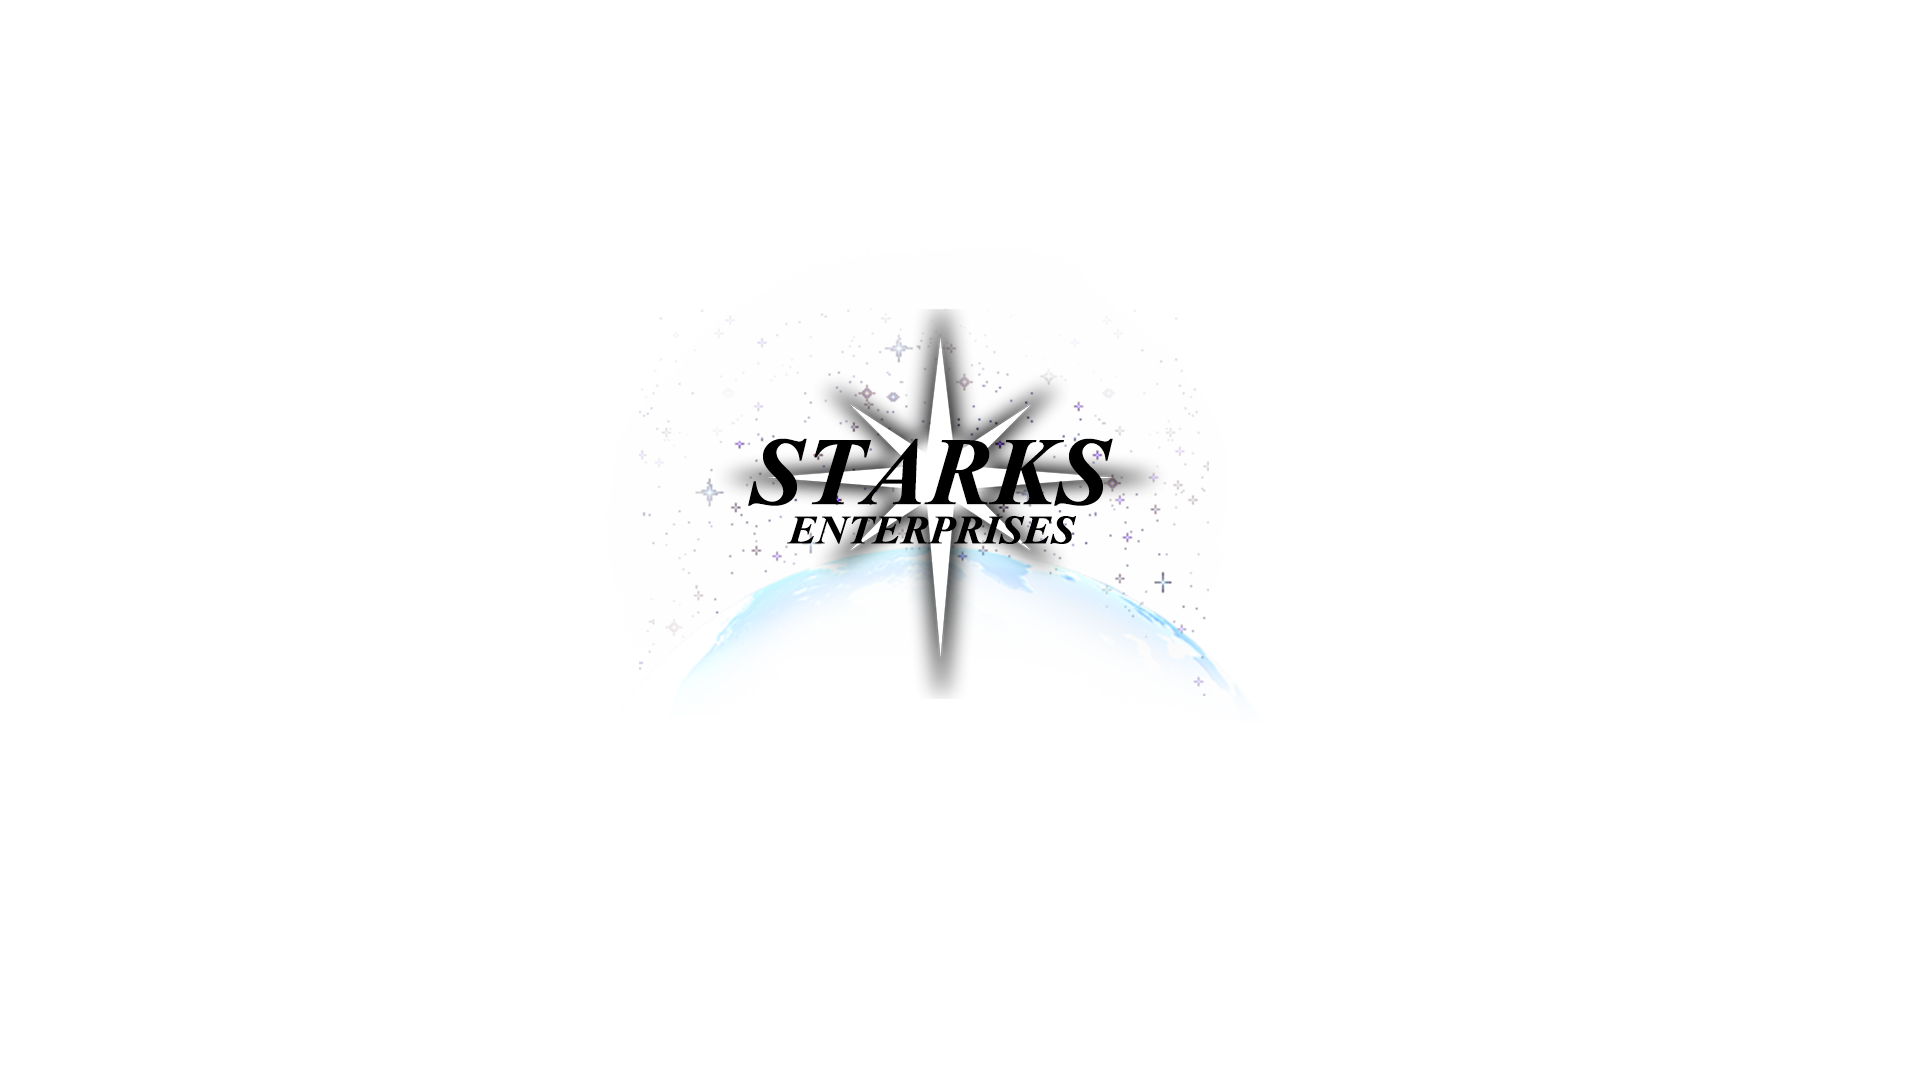 Starks Enterprises